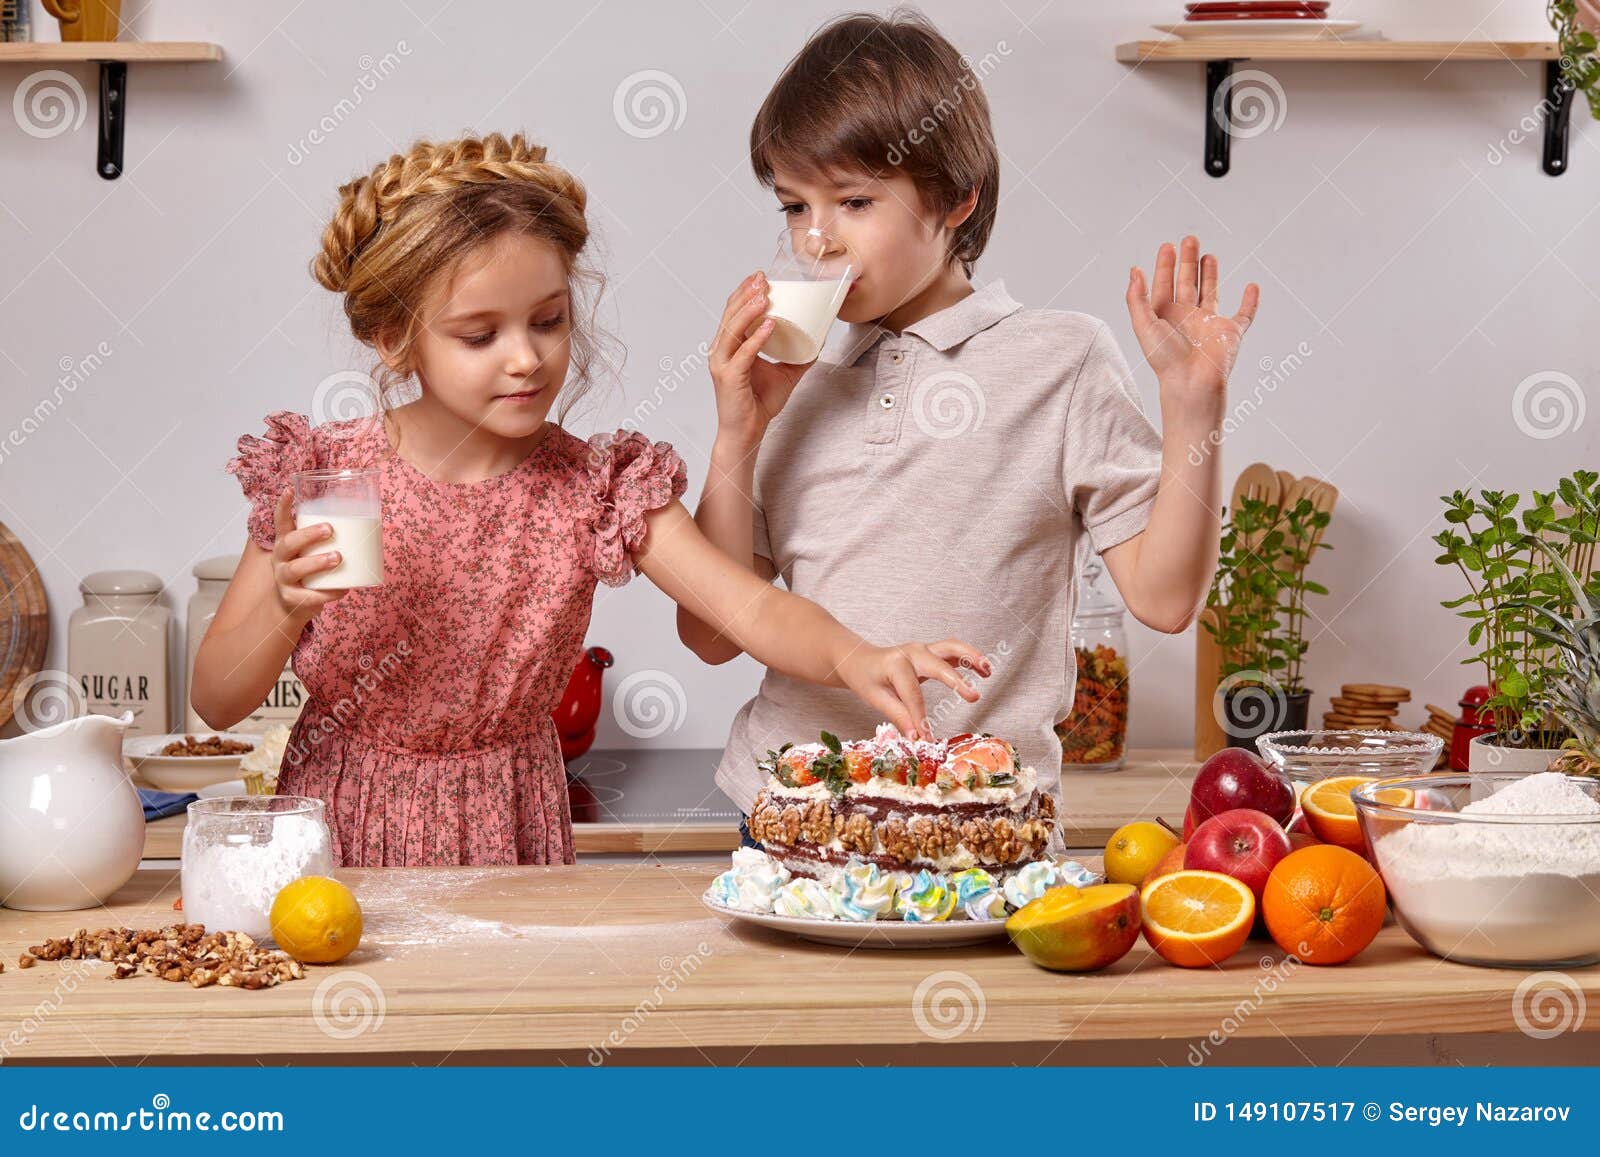 Кухня против воли. Подруги на кухне на кухне делает торт. Женщина делает торт дома. Children make Cakes together. He is making a Cake.